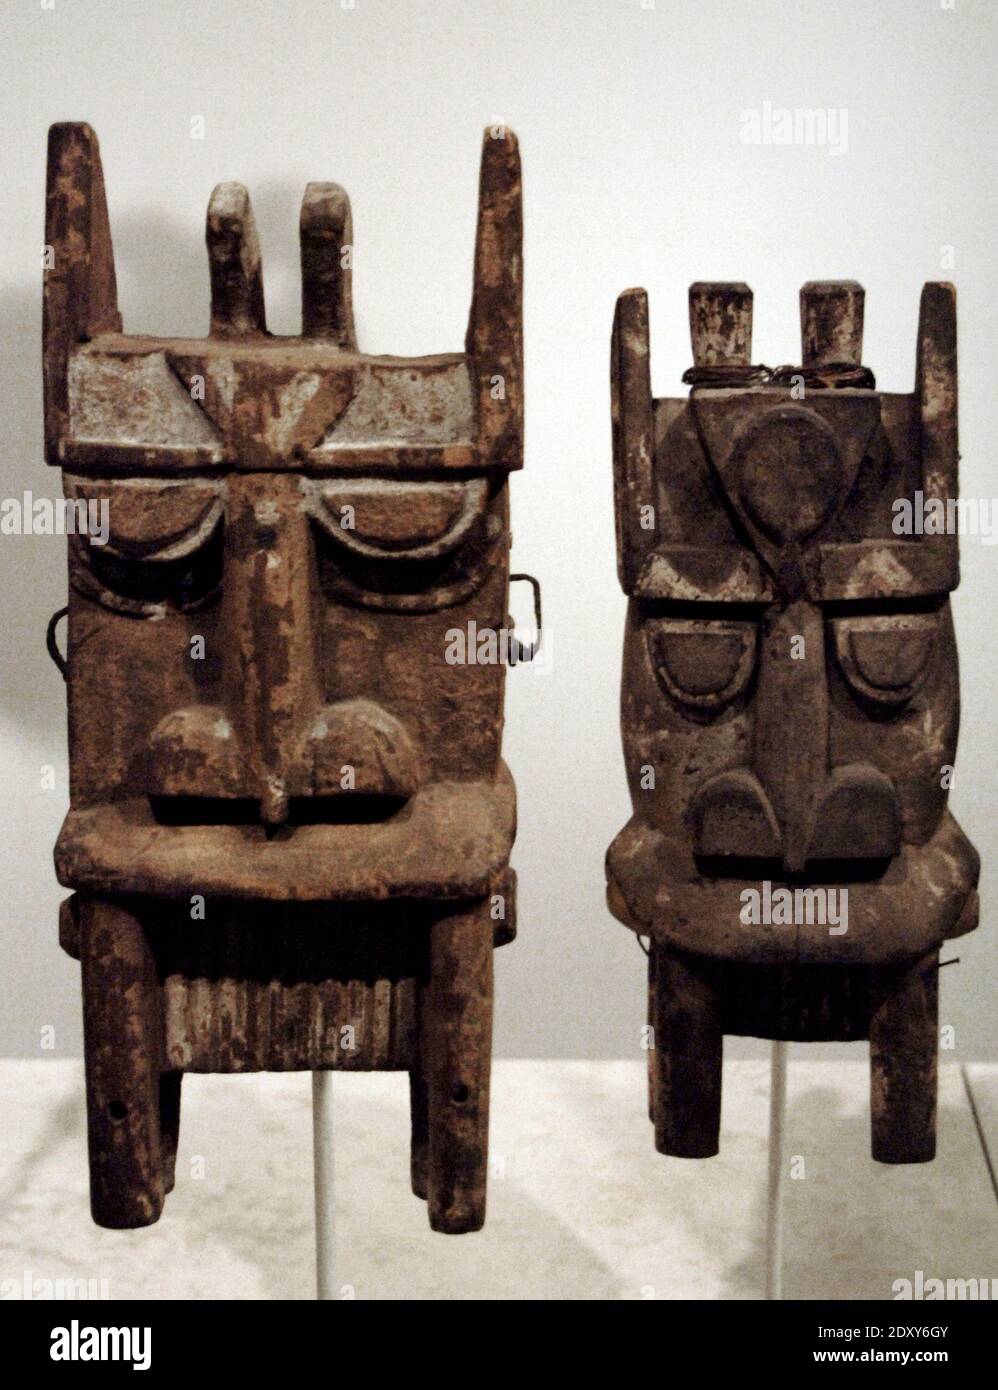 Maschere Kalabari. Popoli Ijo (ippopotamo, maschera acquatica). Nigeria, Africa. Inizio 20 ° secolo. Legno. British Museum. Londra, Inghilterra, Regno Unito. Foto Stock